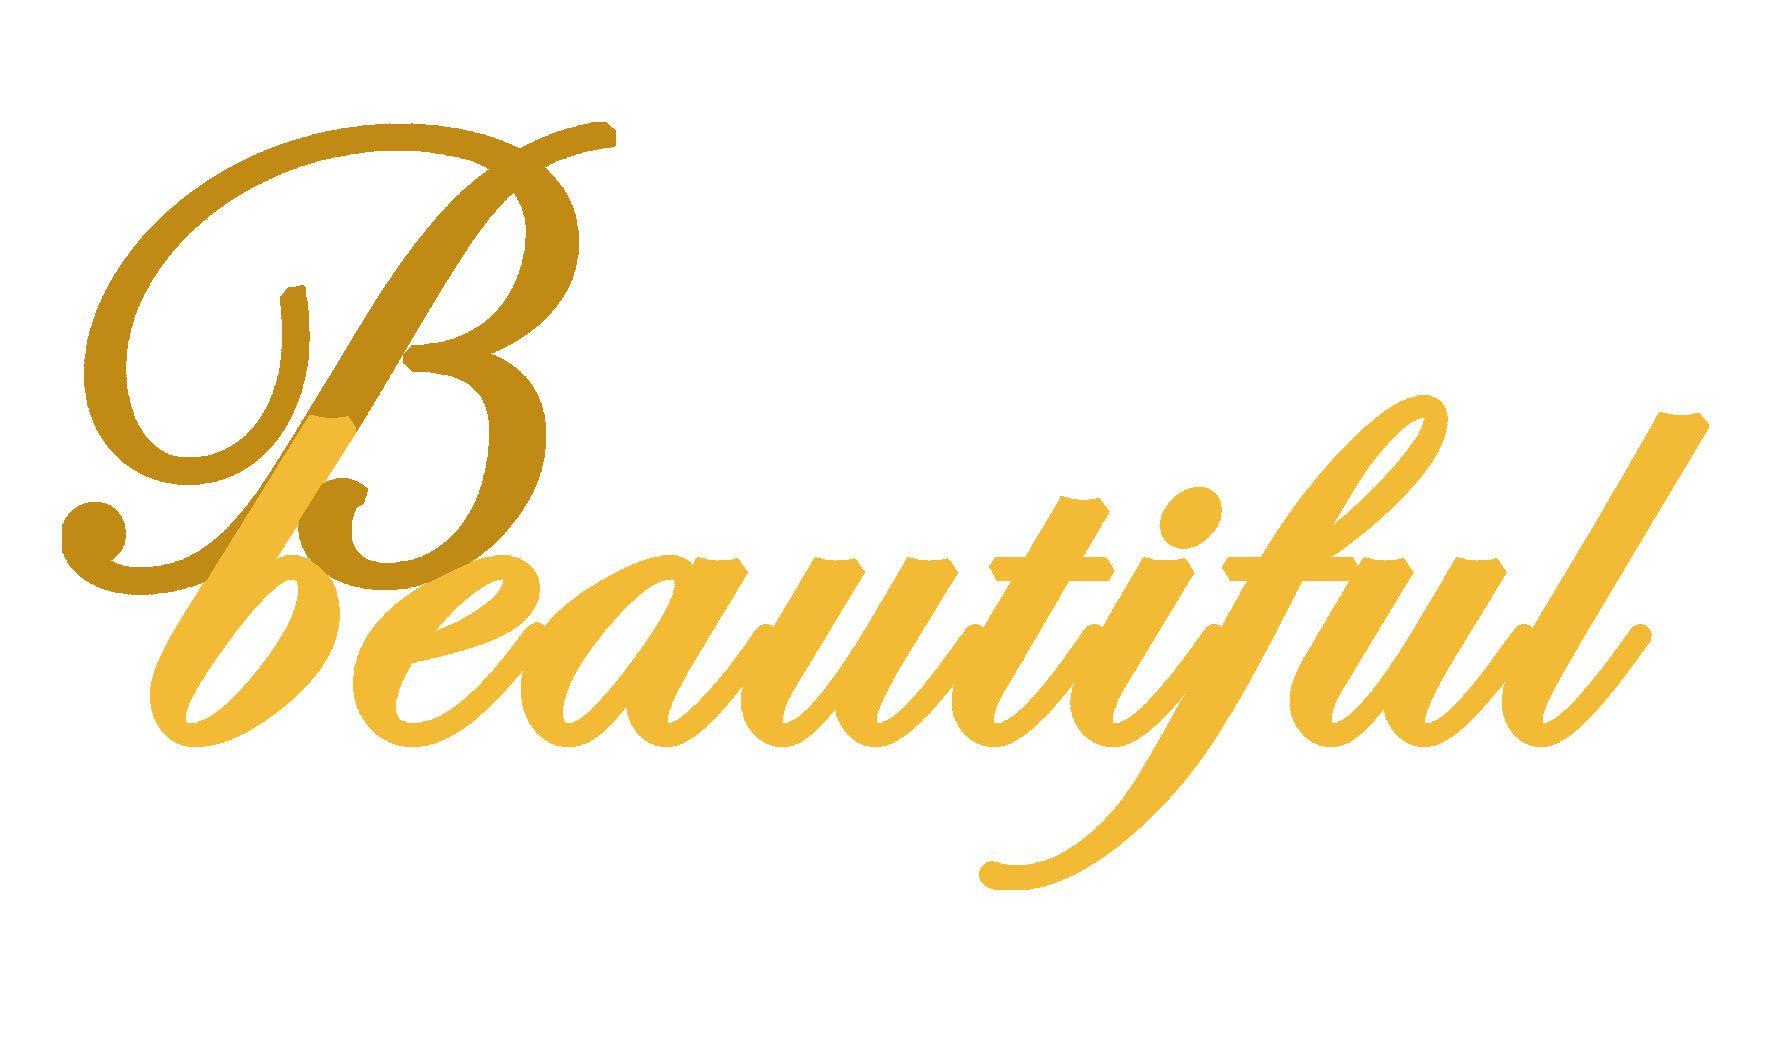 Beautiful Logo - Company “B Beautiful” Logo: Final Design